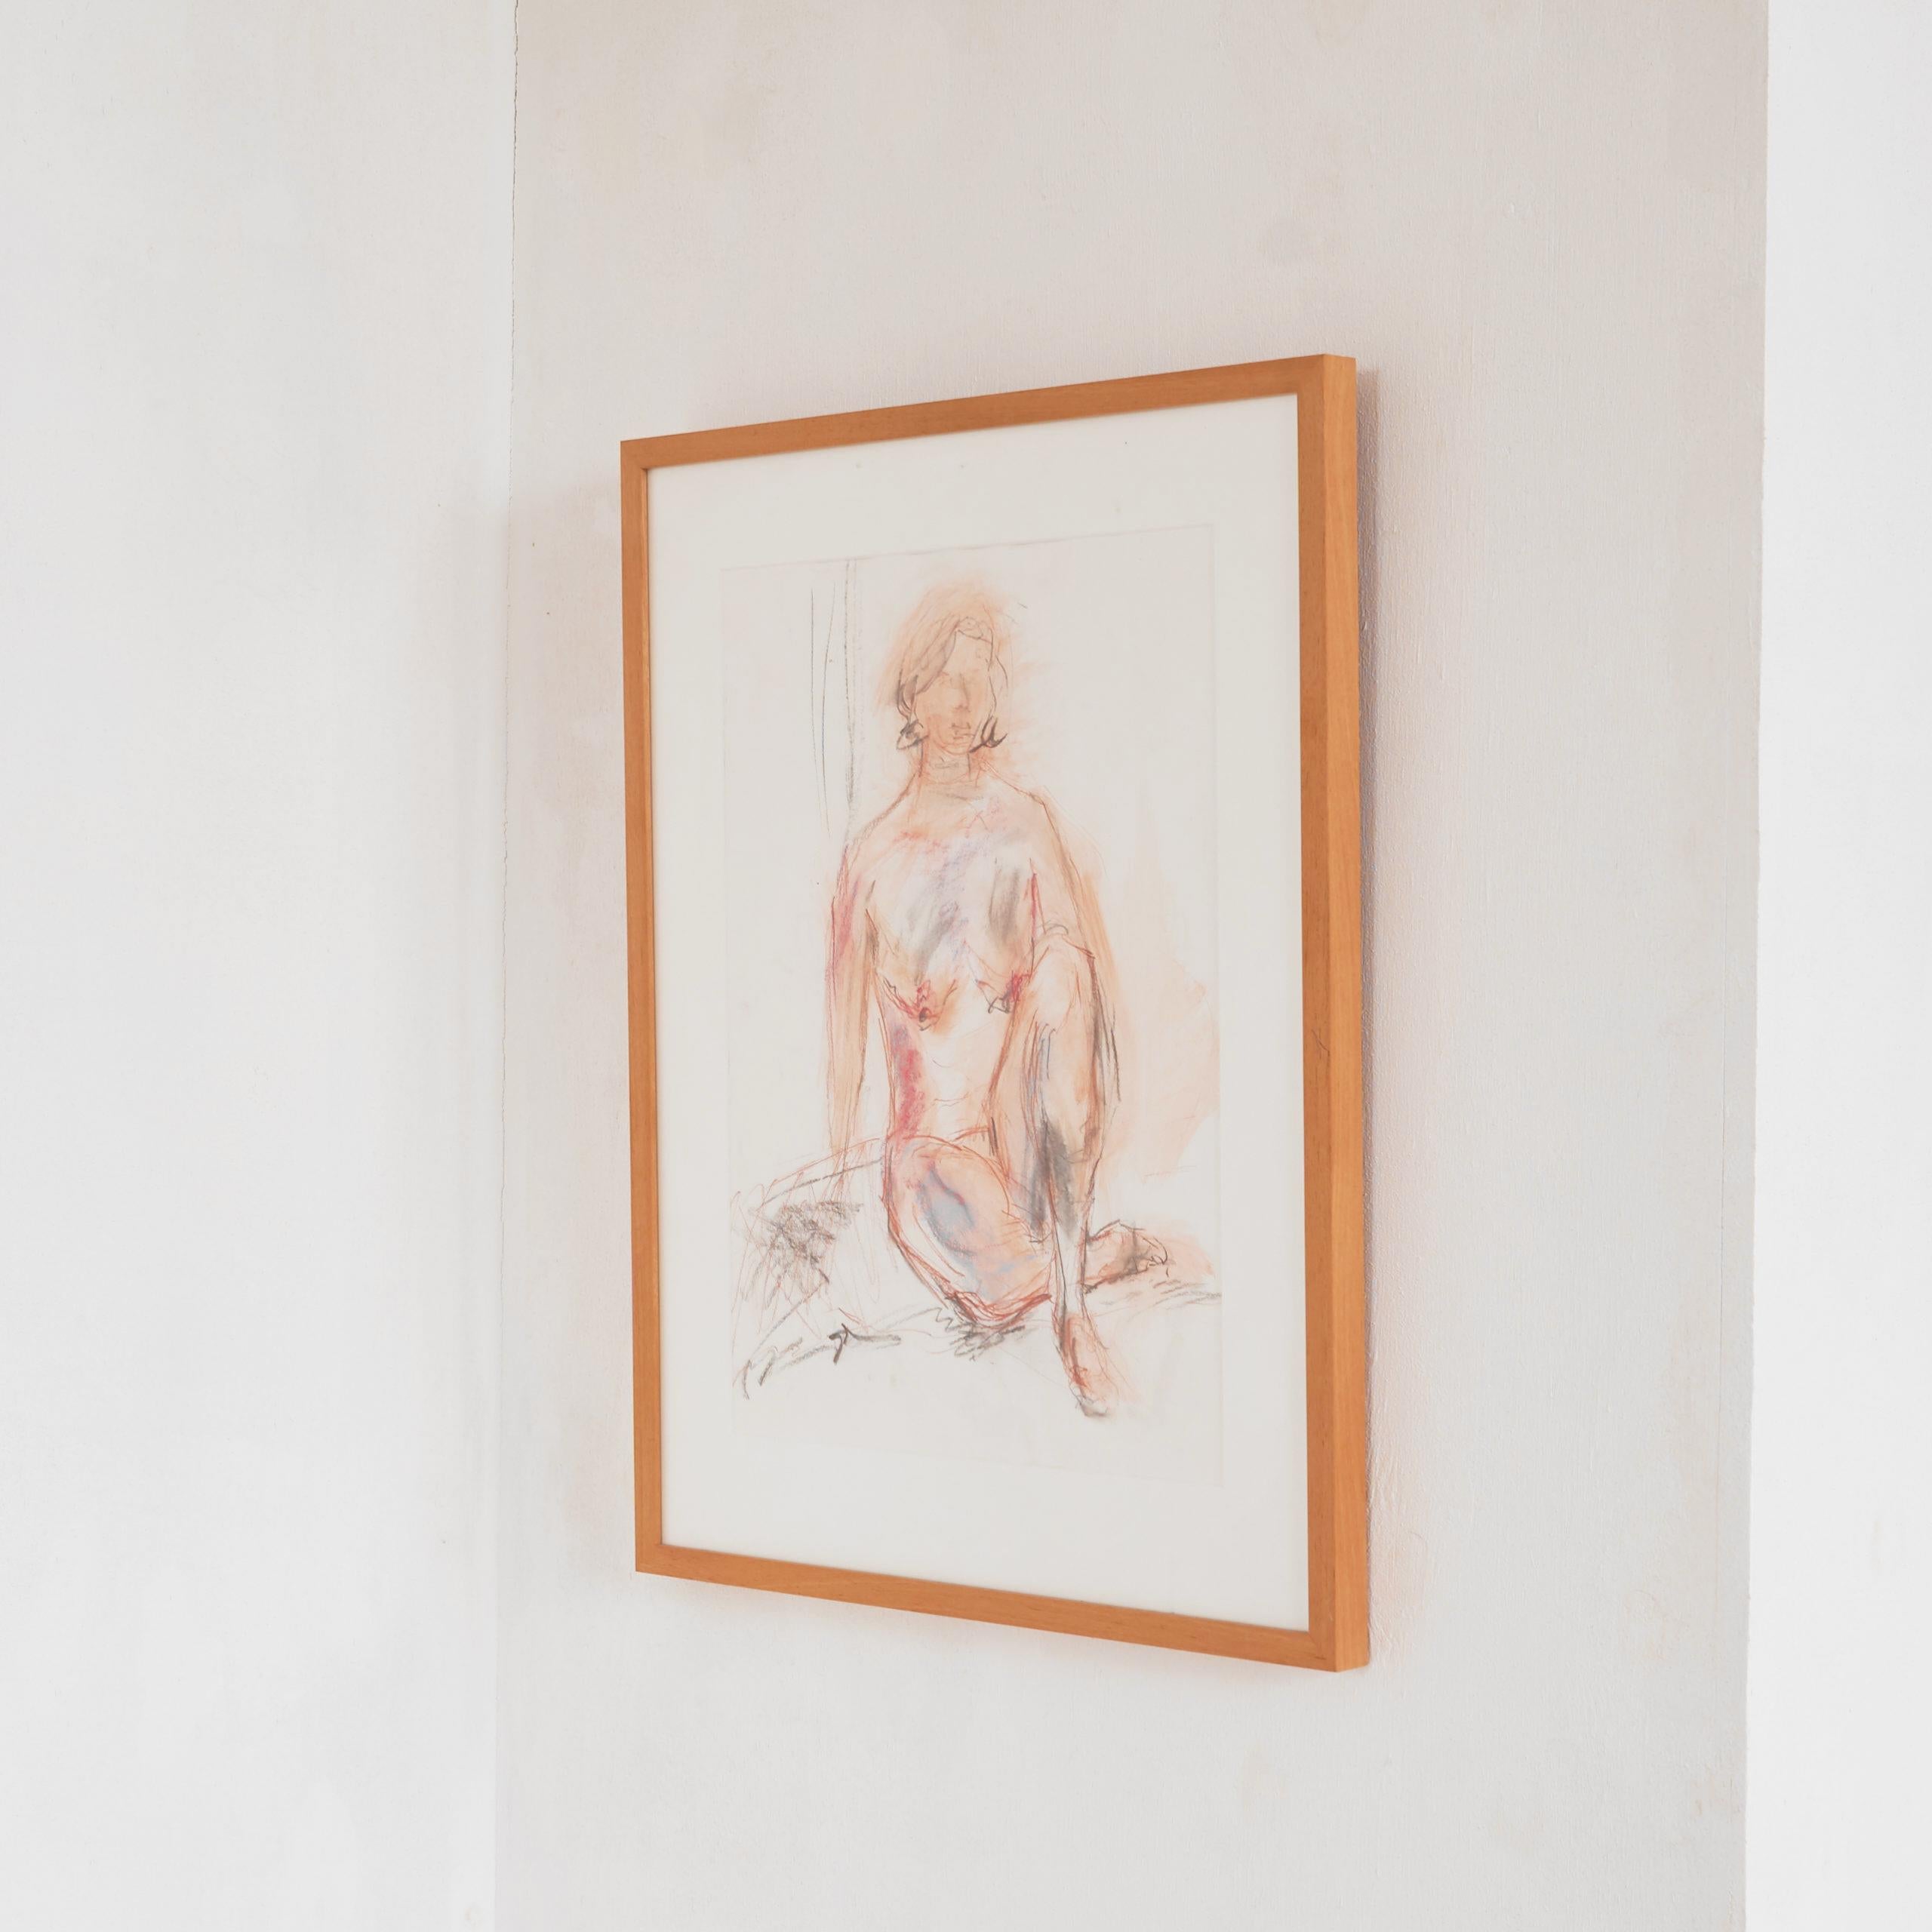 Der am Bauhaus ausgebildete Künstler Paul Citroen (1896-1983) ist für seine grafischen Arbeiten und Fotografien bekannt.

Diese Zeichnung einer nackten Frau ist in ihrer einfachen Form und den warmen Farben fantastisch. Die Art und Weise, wie